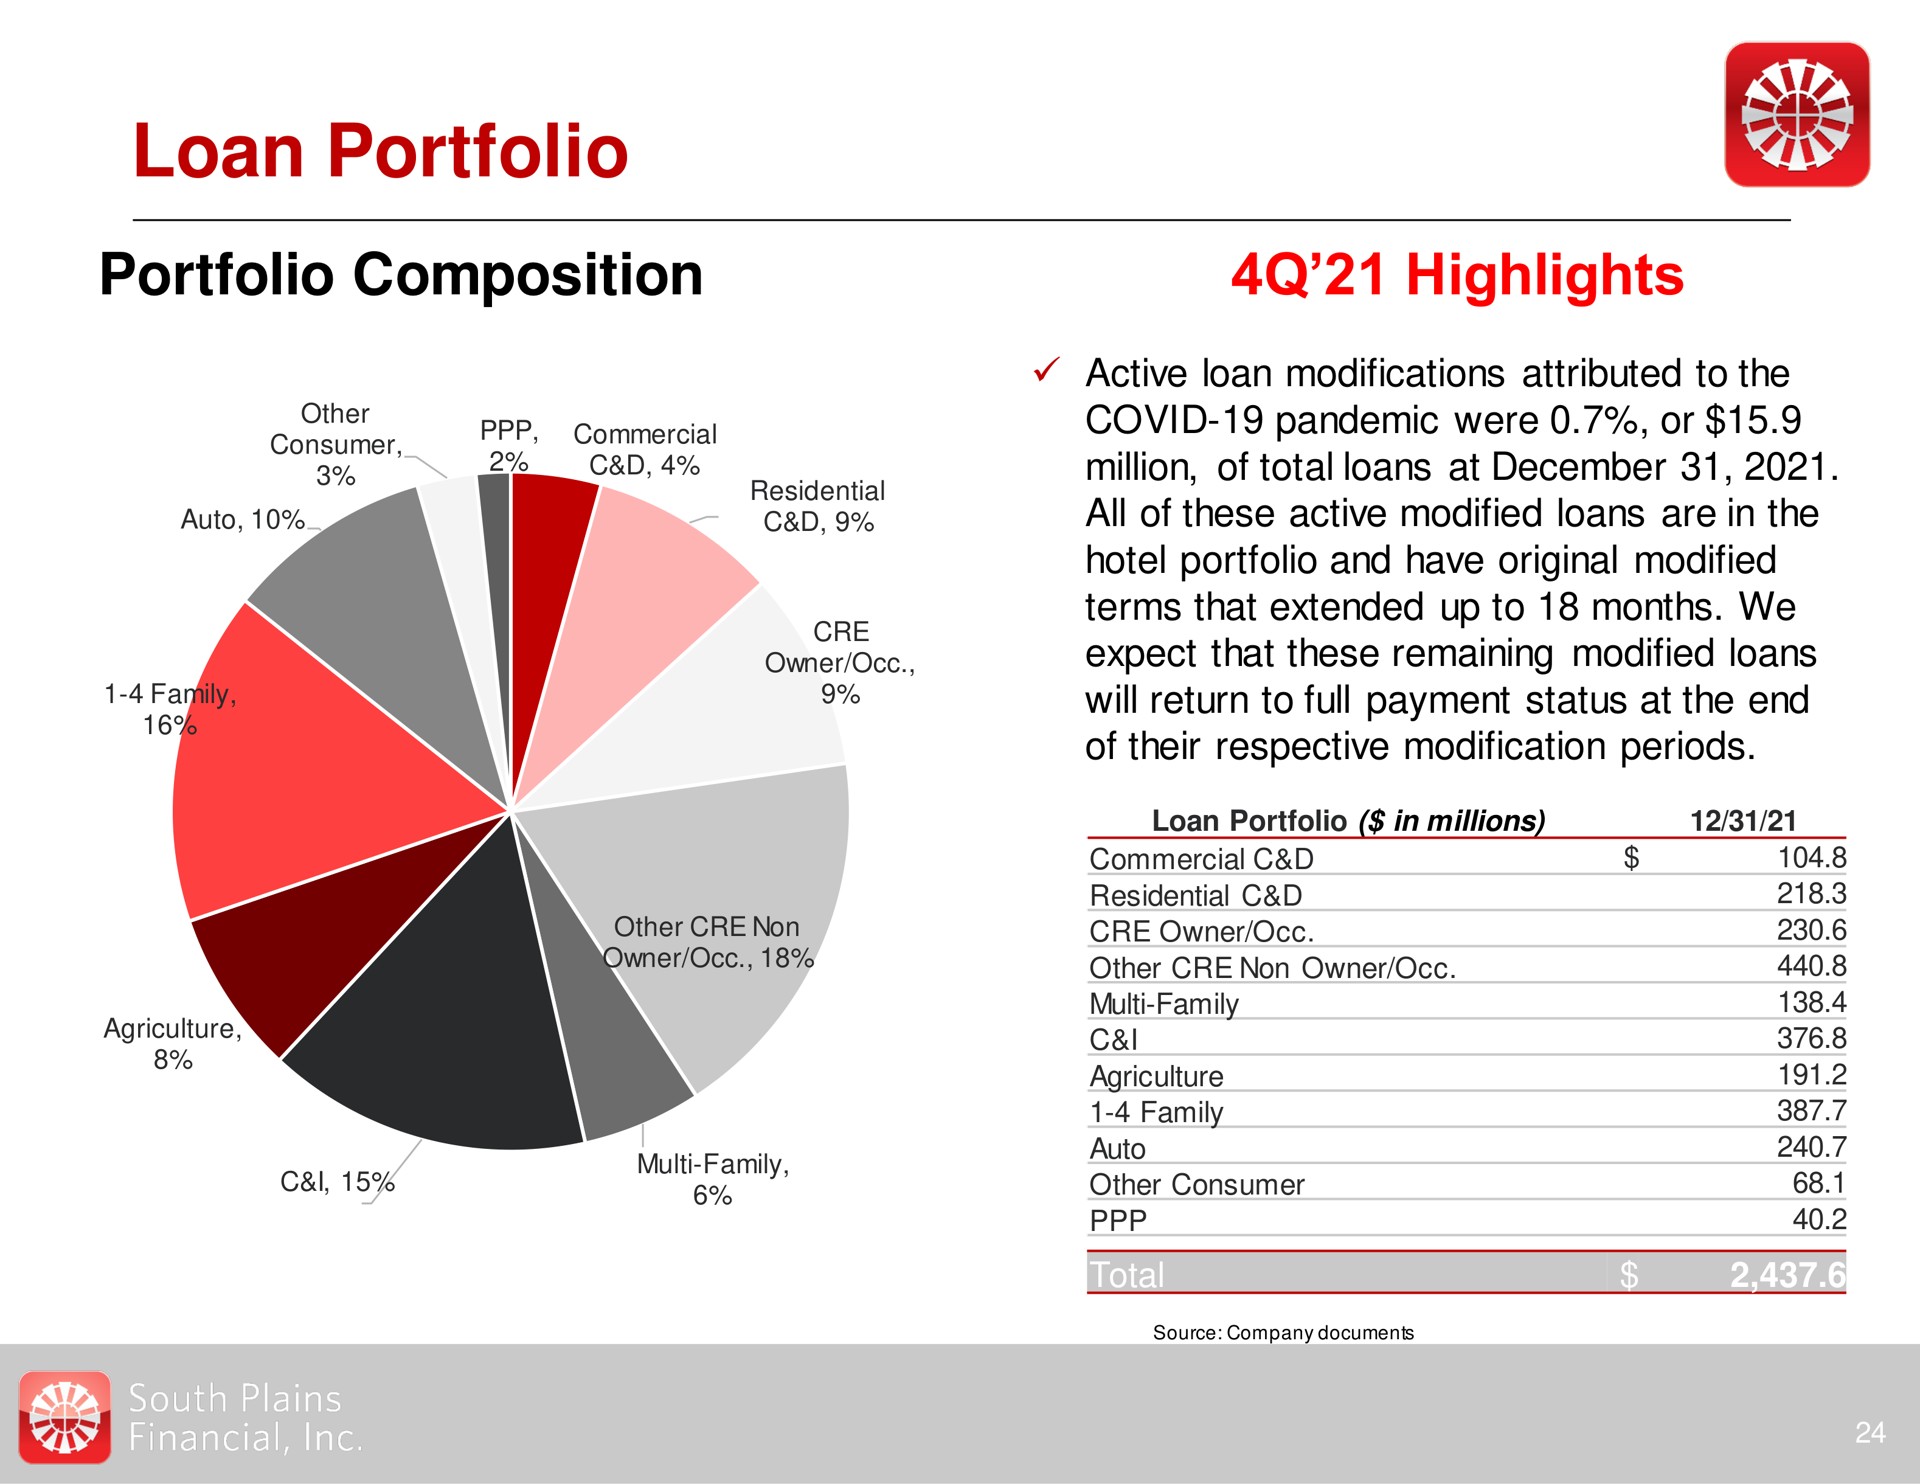 loan portfolio portfolio composition highlights | South Plains Financial